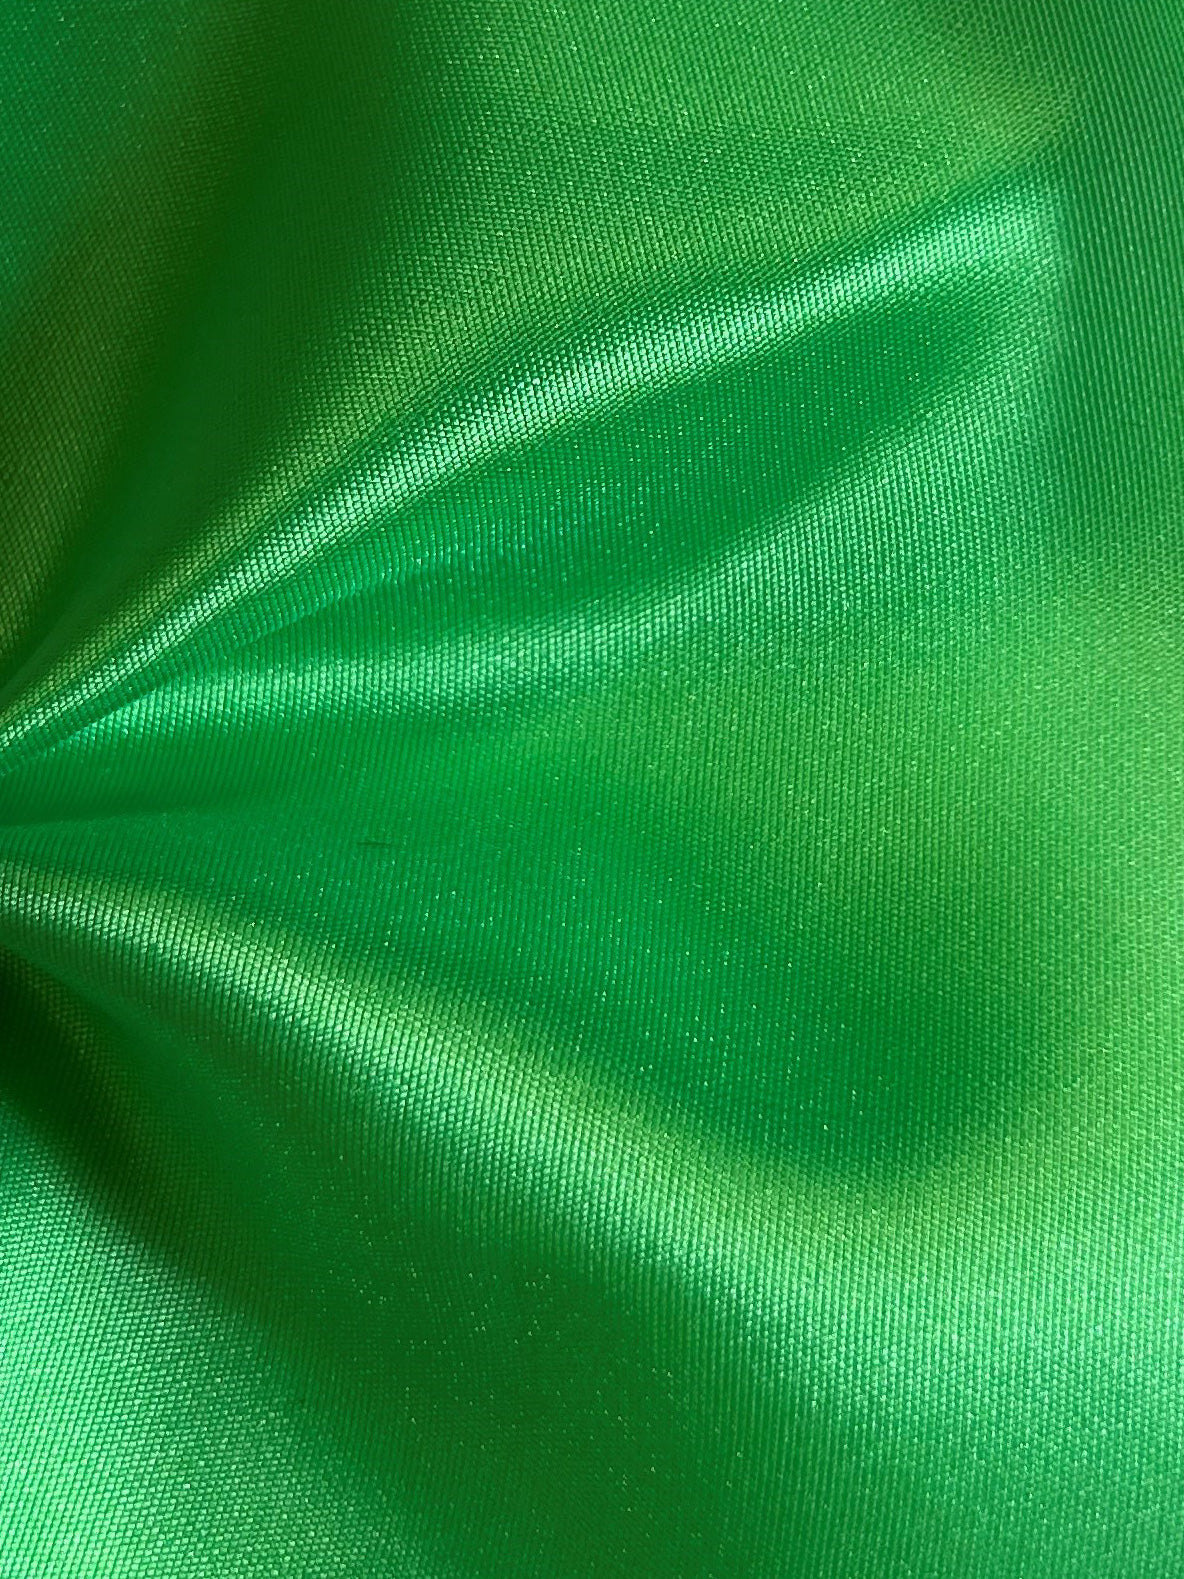 Amazonasgrüner Polyester-Taft – Walzer